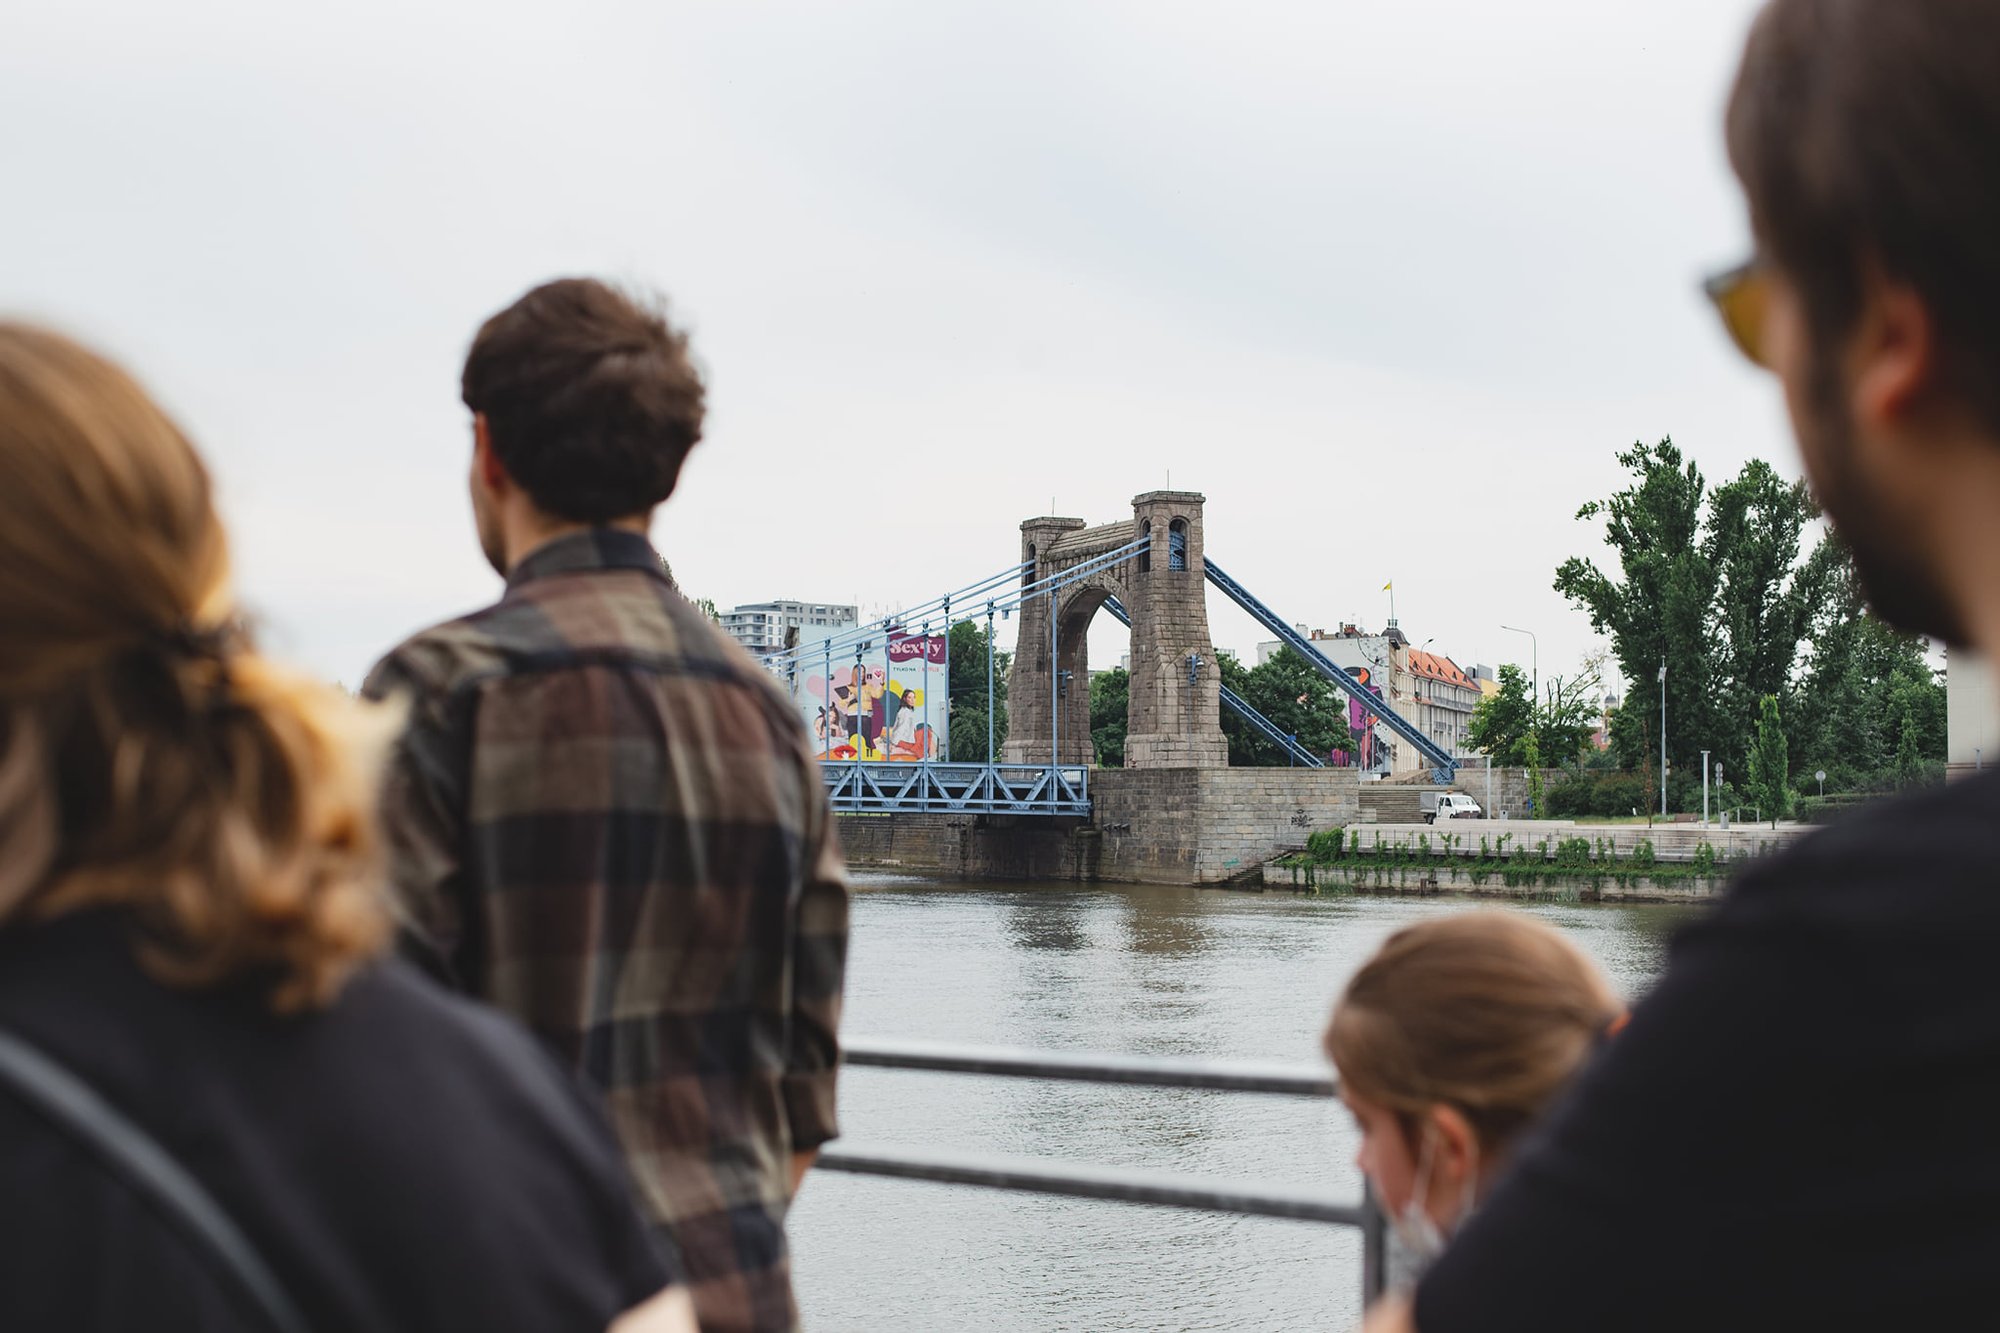 Kolorowa, pozioma fotografia przedstawiająca grupę osób podczas spaceru po osiedlu. Osoby spacerujące są rozmyte, ostrość zdjęcia ustawiona jest na most Grunwaldzki, znajdujący się w tle.